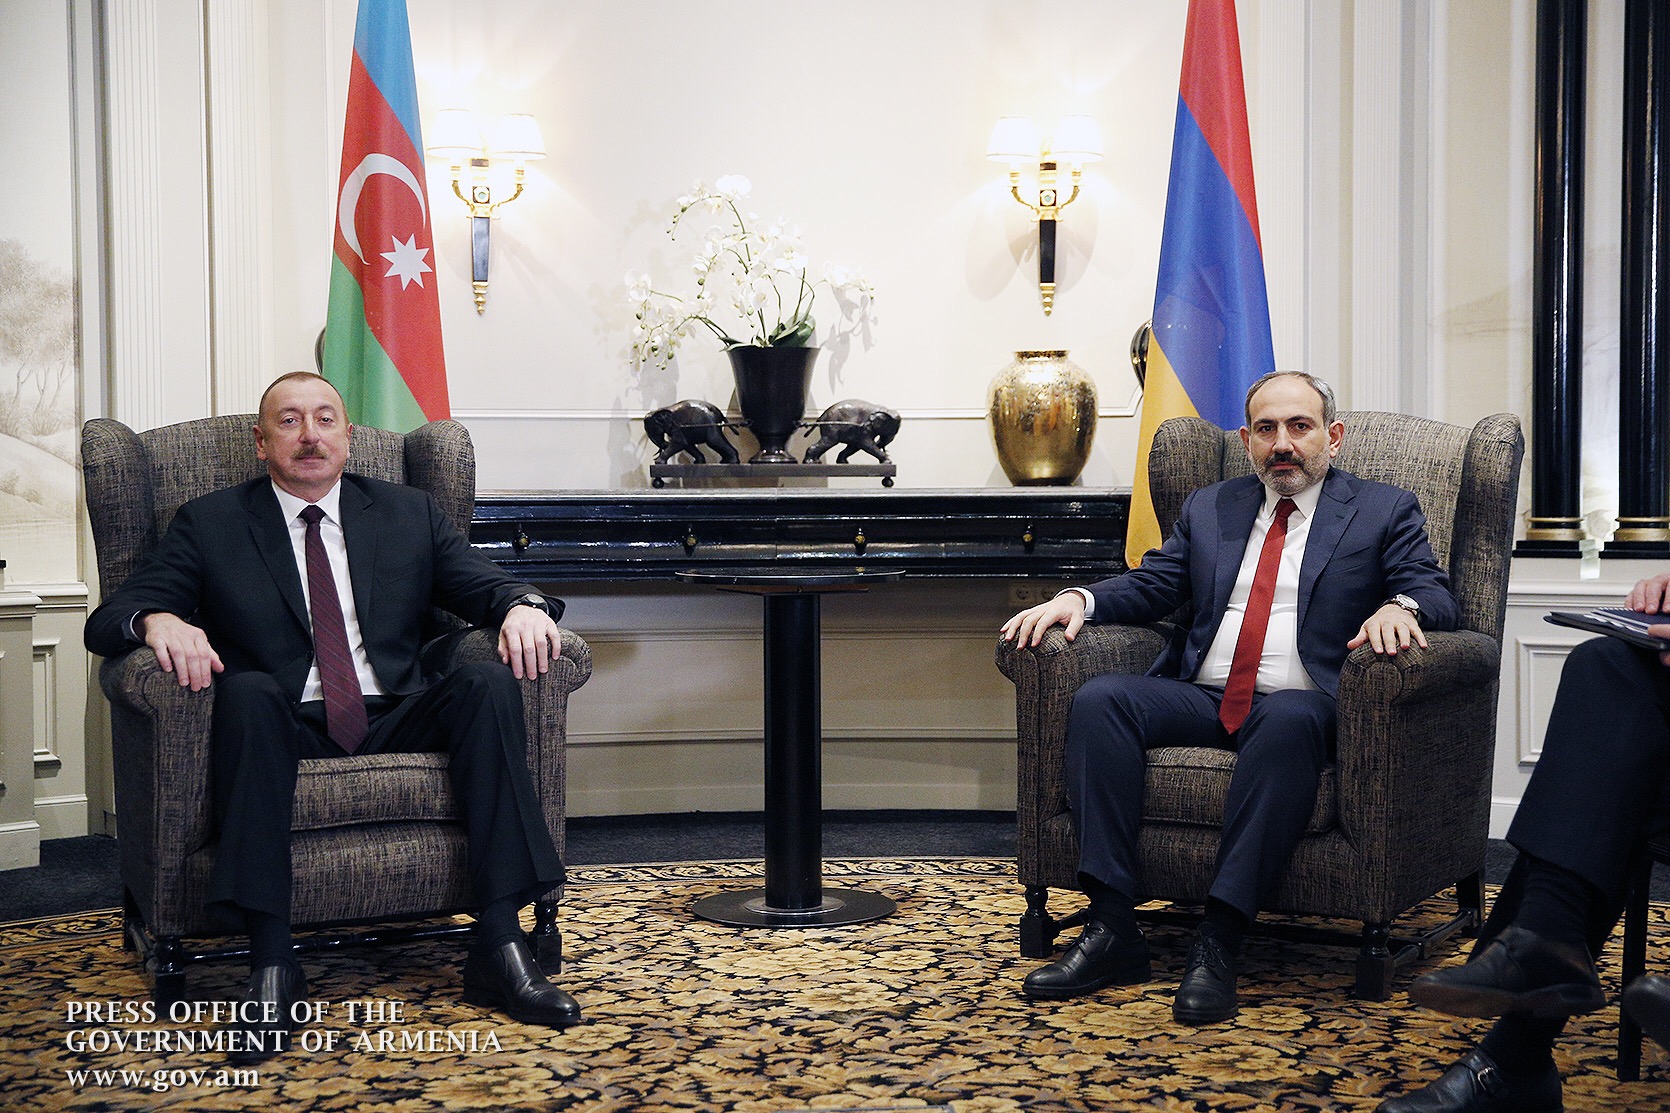 Роль РФ в карабахском урегулировании значима, но не может заменить позиции сторон - посол